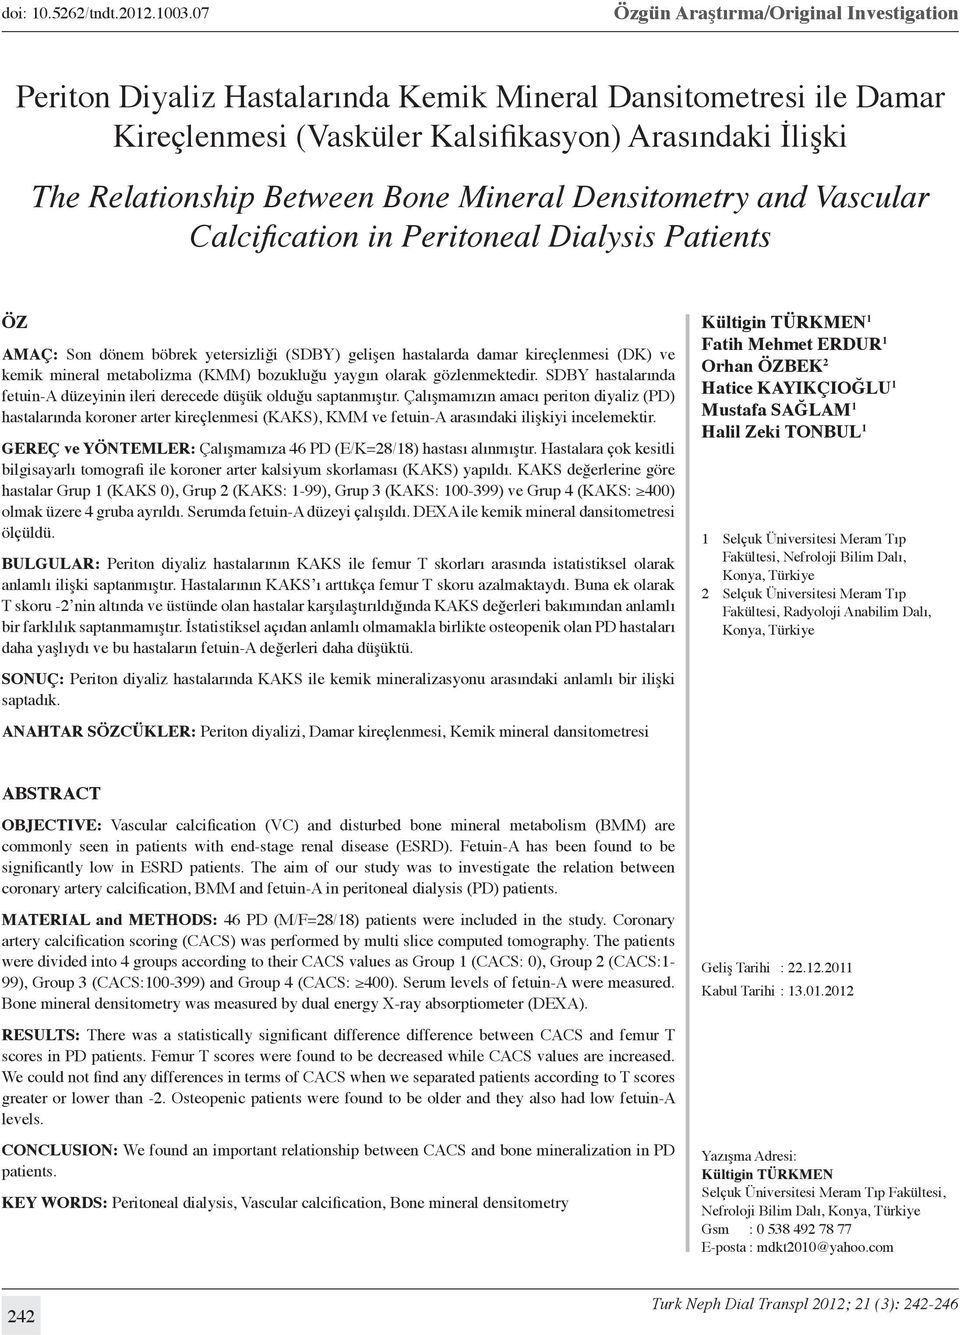 Mineral Densitometry and Vascular Calcification in Peritoneal Dialysis Patients Öz AMAÇ: Son dönem böbrek yetersizliği (SDBY) gelişen hastalarda damar kireçlenmesi (DK) ve kemik mineral metabolizma